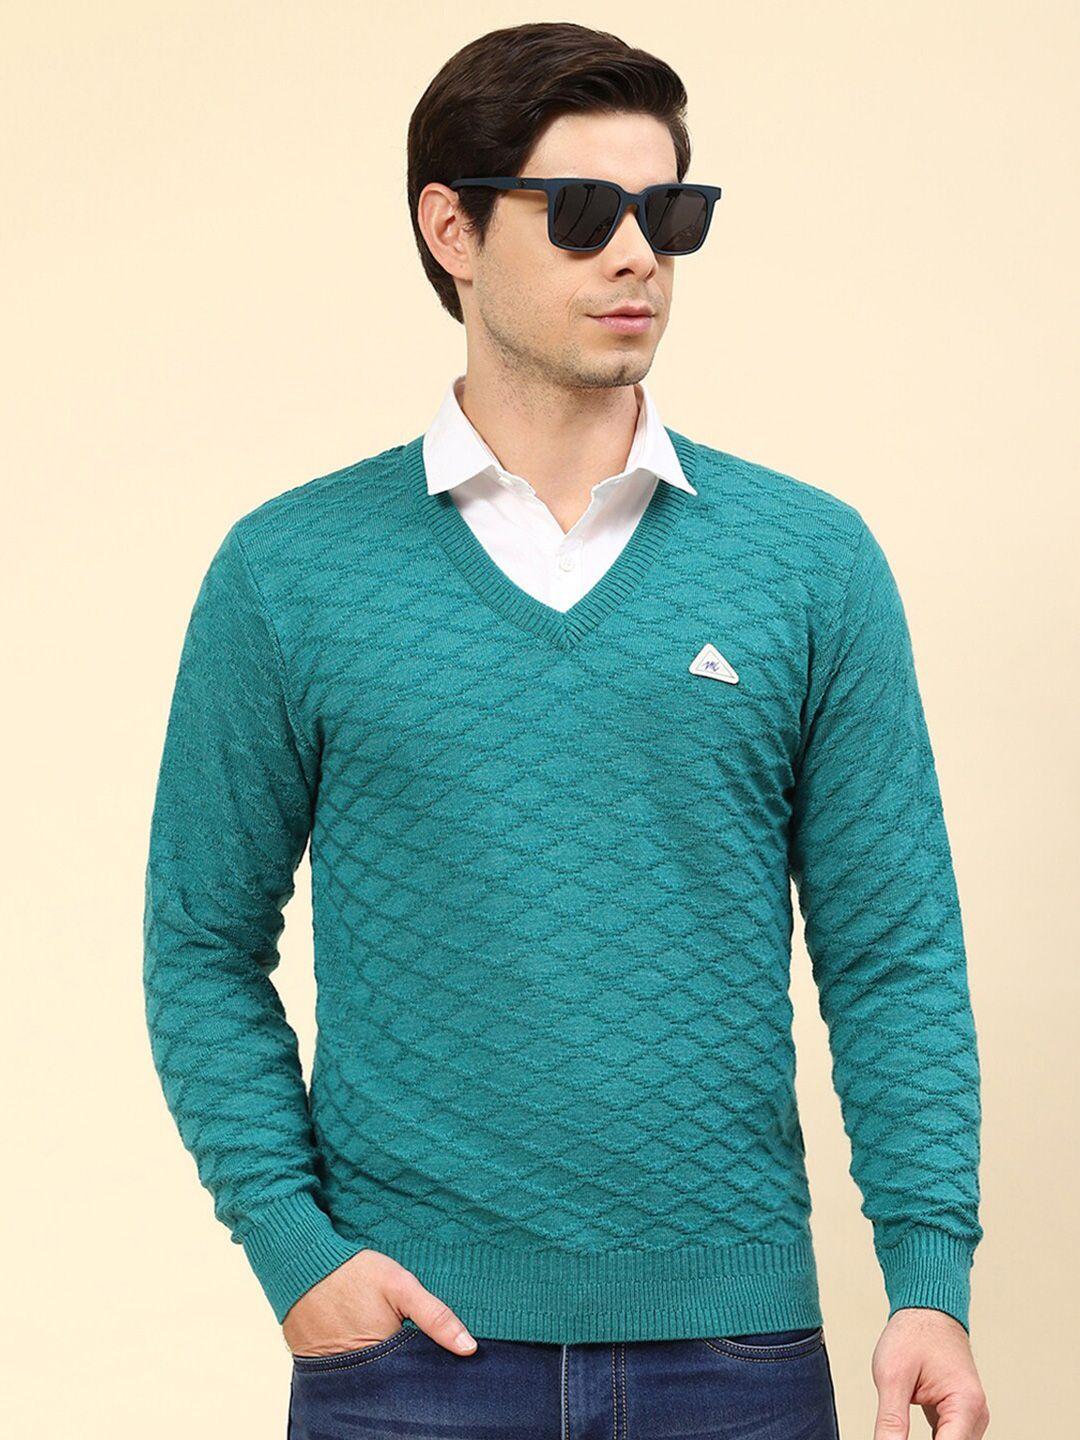 monte carlo cable knit self design v-neck pullover sweater